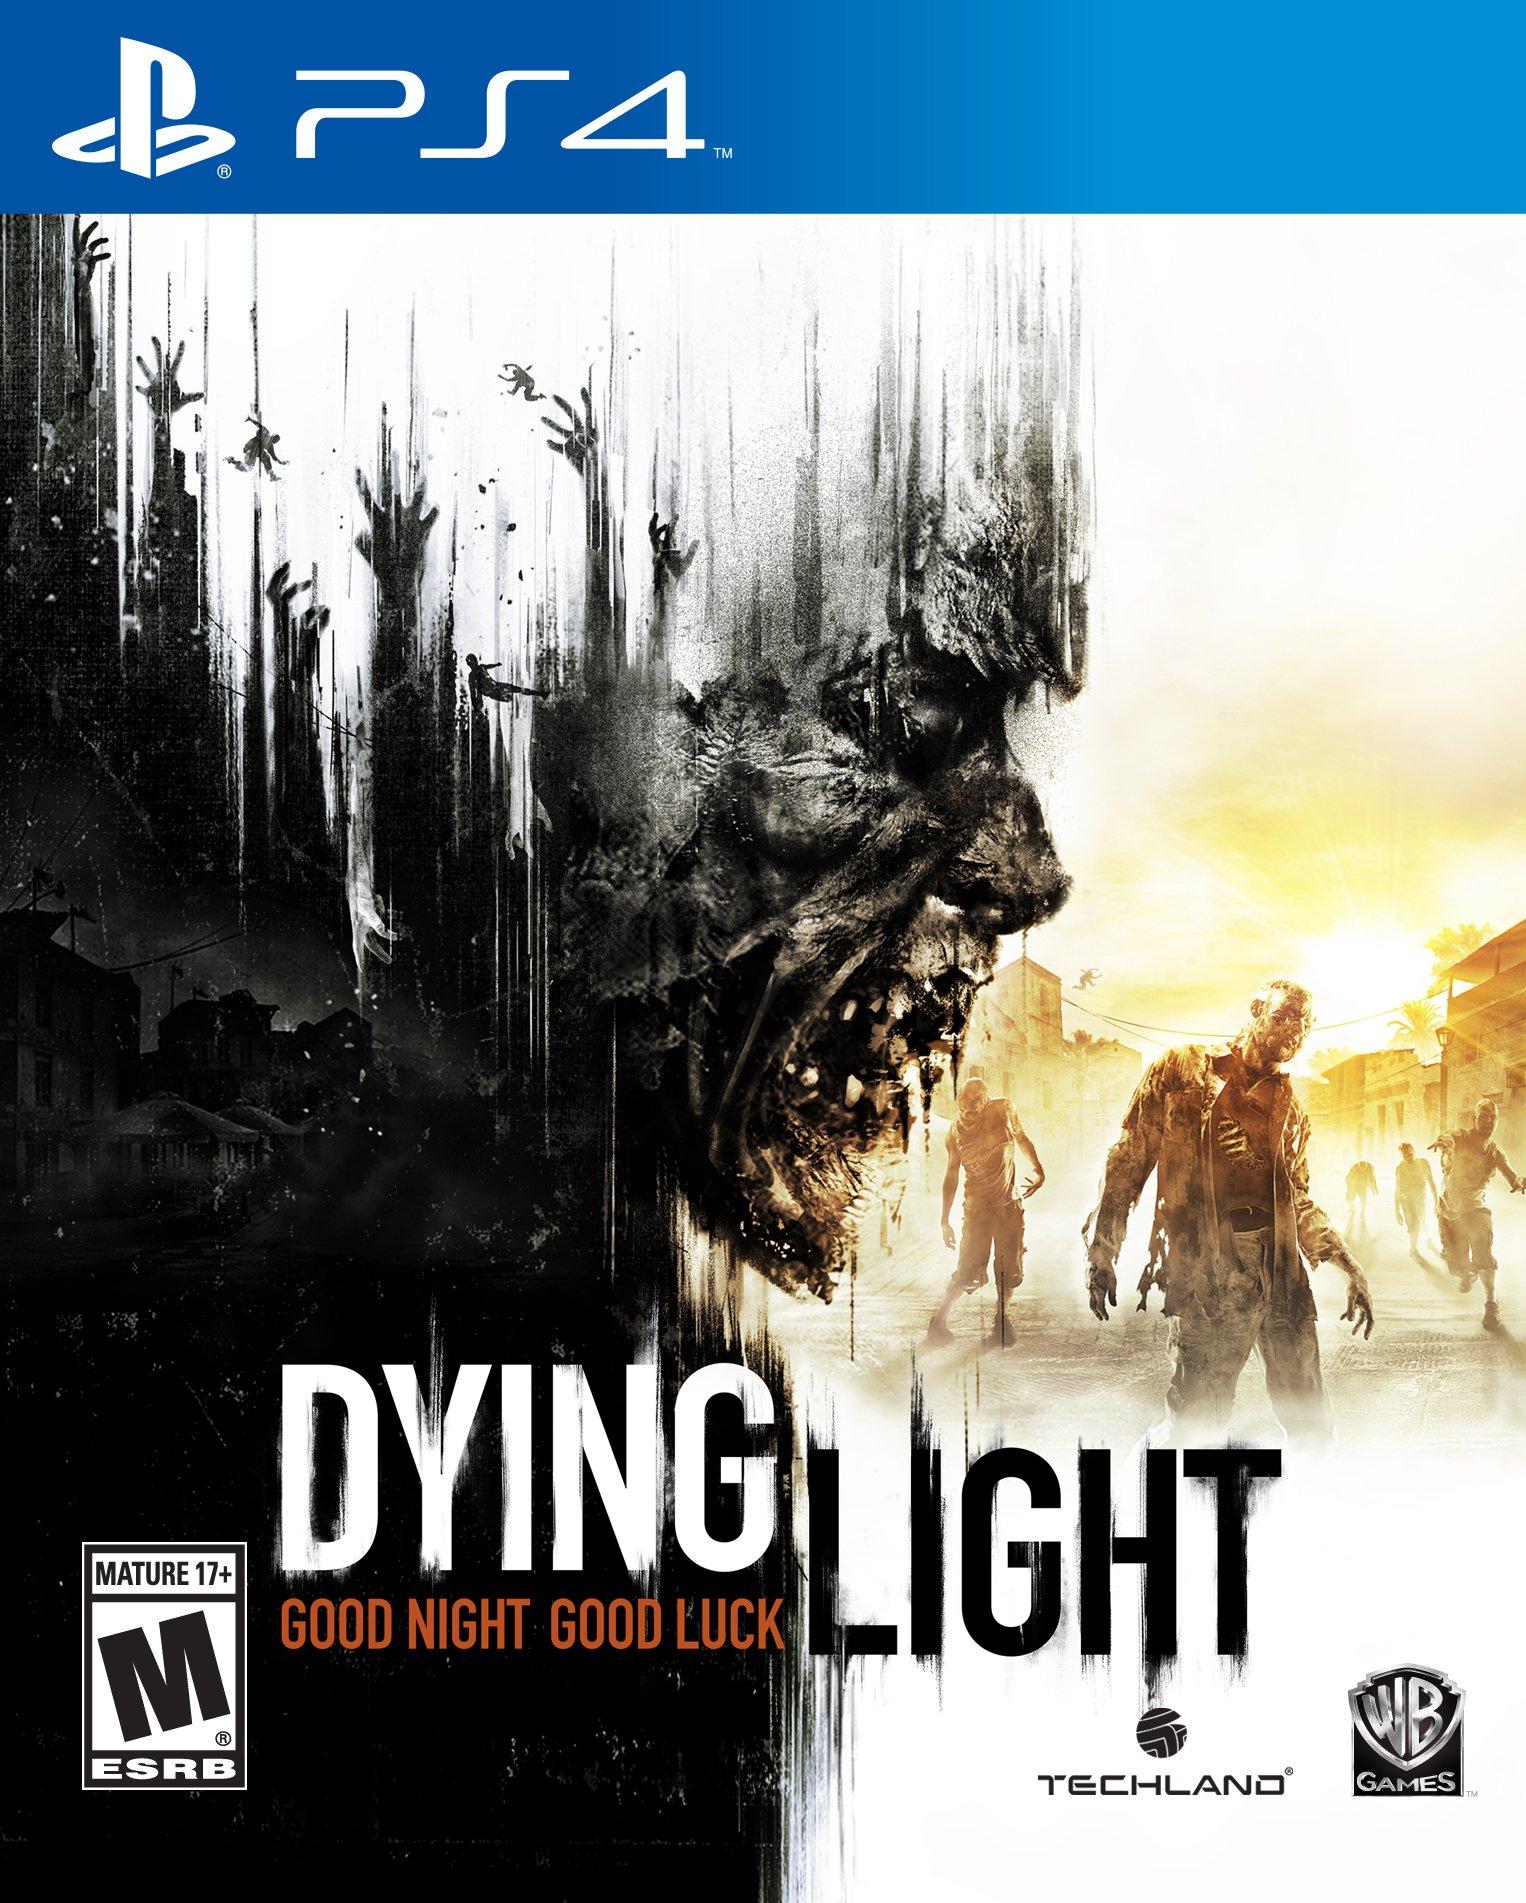 Light Anniversary Edition - PS4 | PlayStation 4 | GameStop